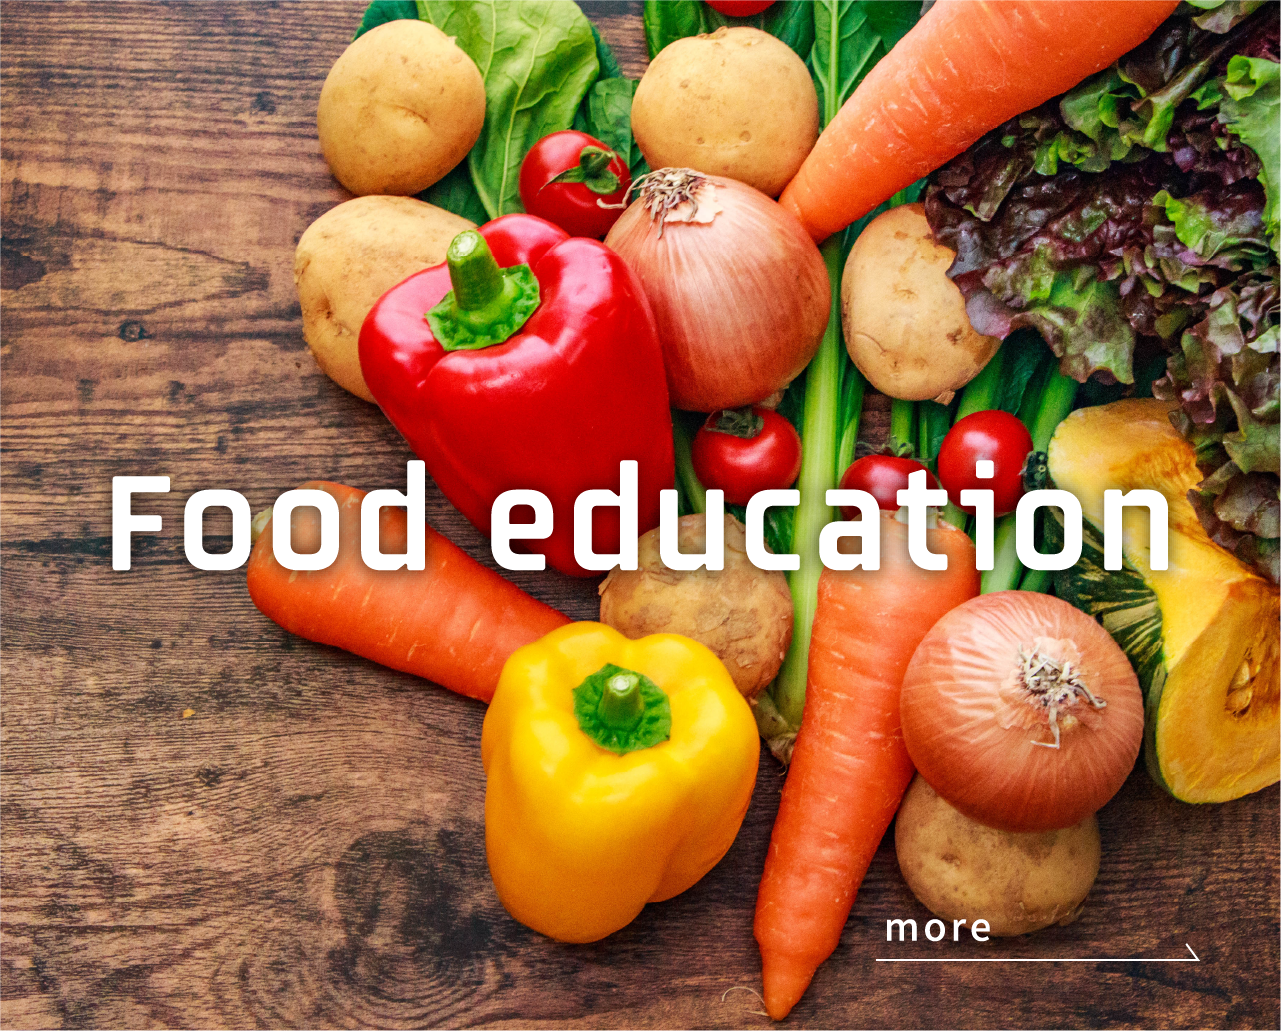 Food education